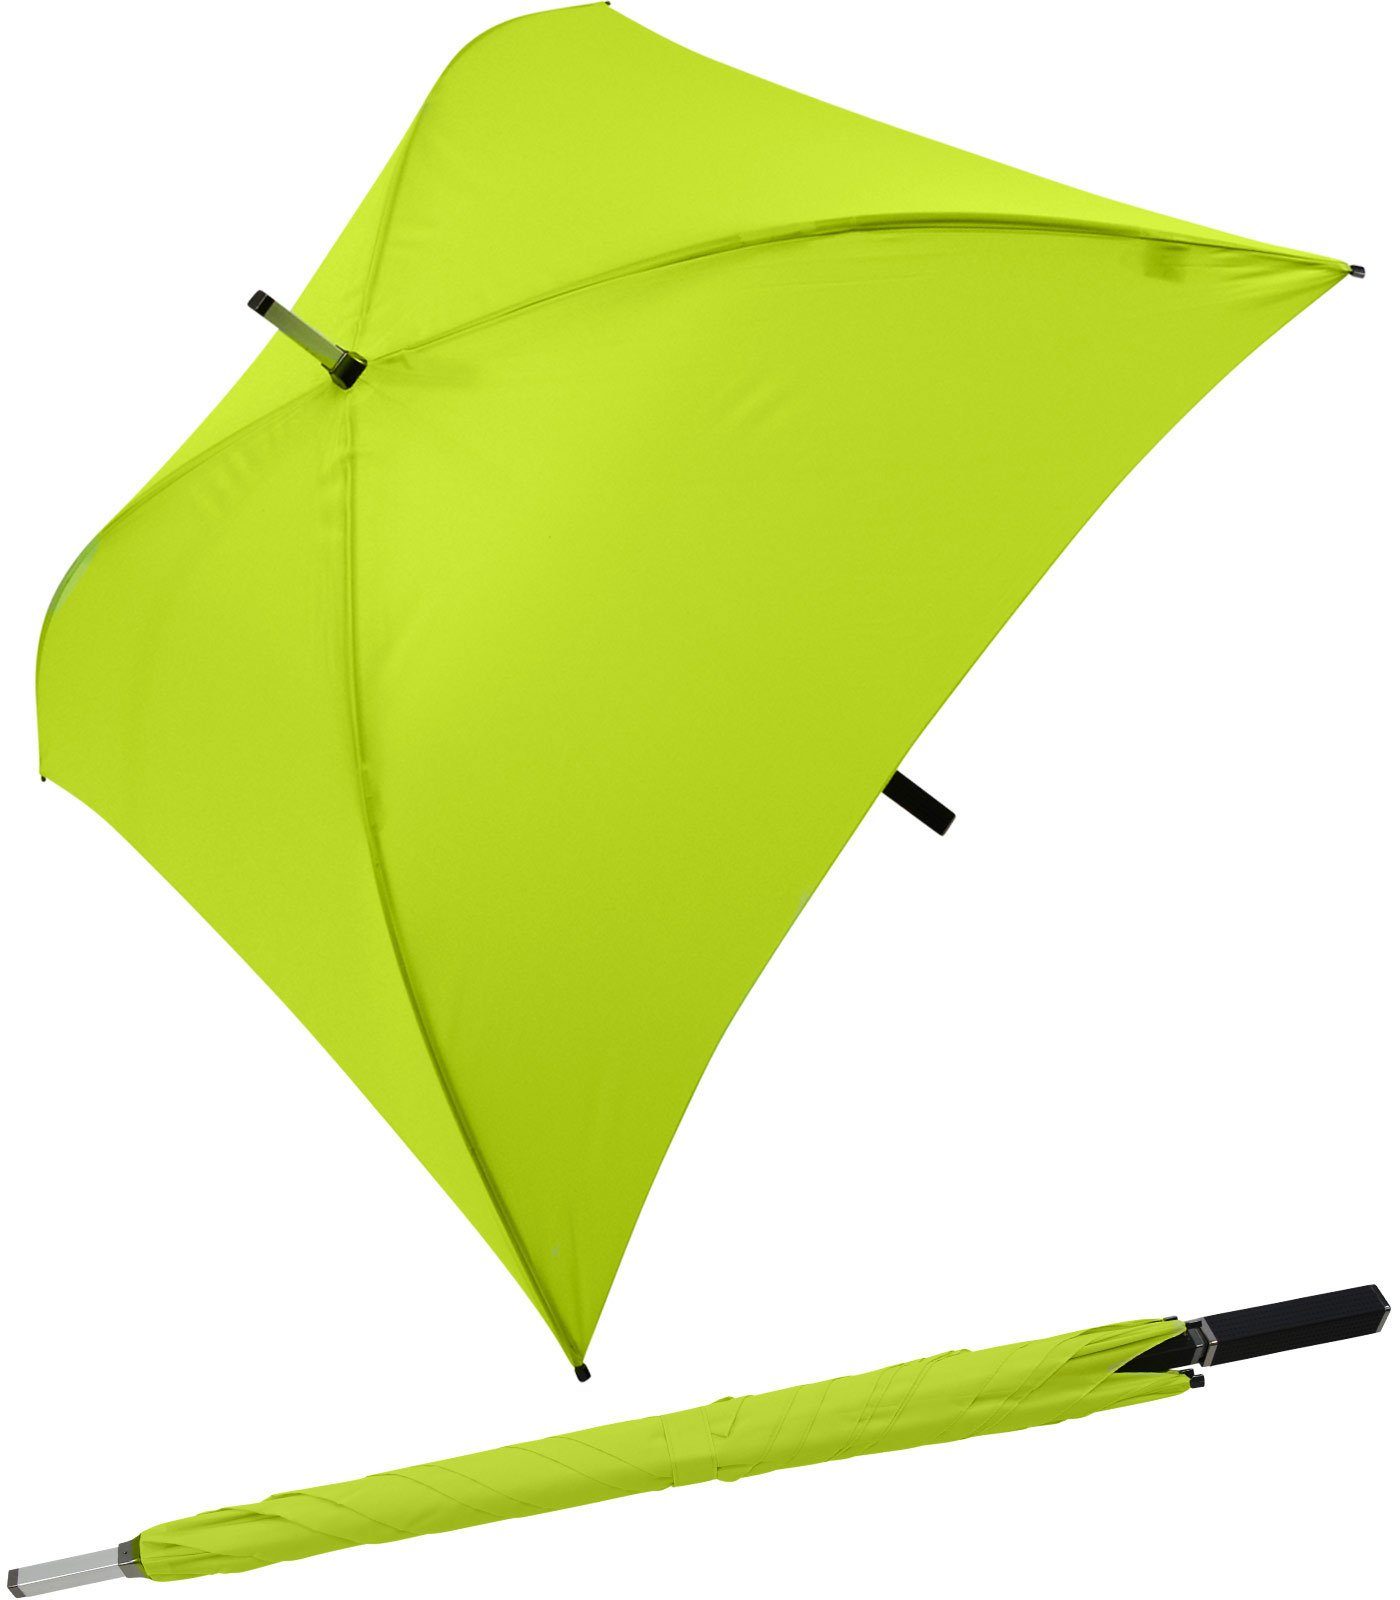 Impliva Langregenschirm All Square® voll quadratischer Regenschirm, der ganz besondere Regenschirm hellgrün | Stockschirme